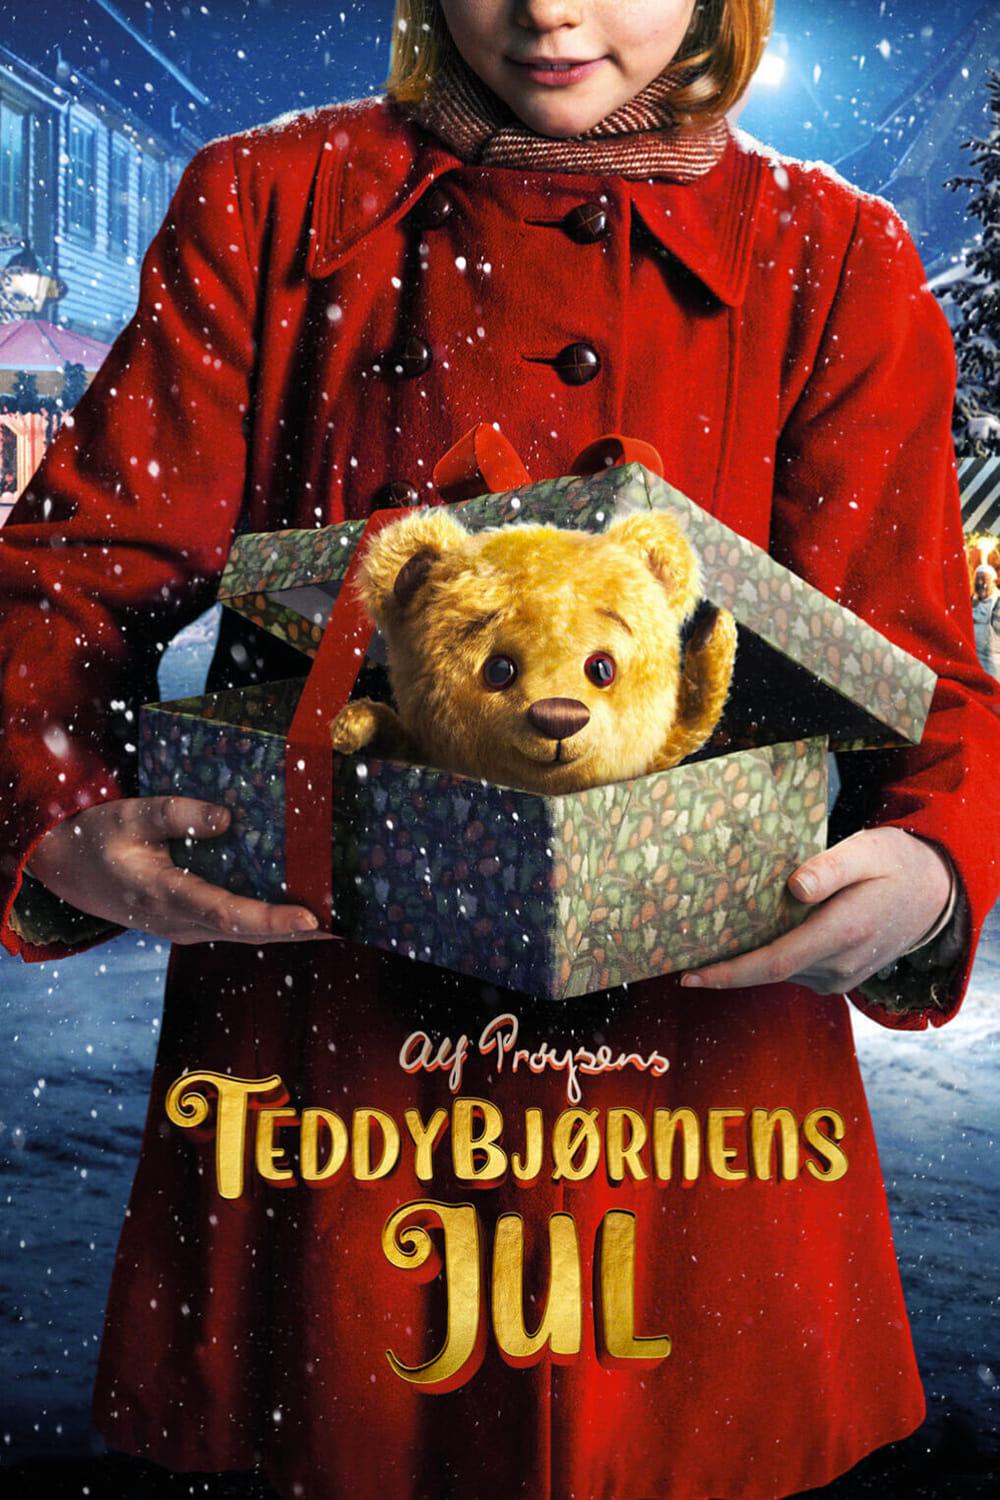 Teddybjørnens Jul est-il disponible sur Netflix ou autre ?